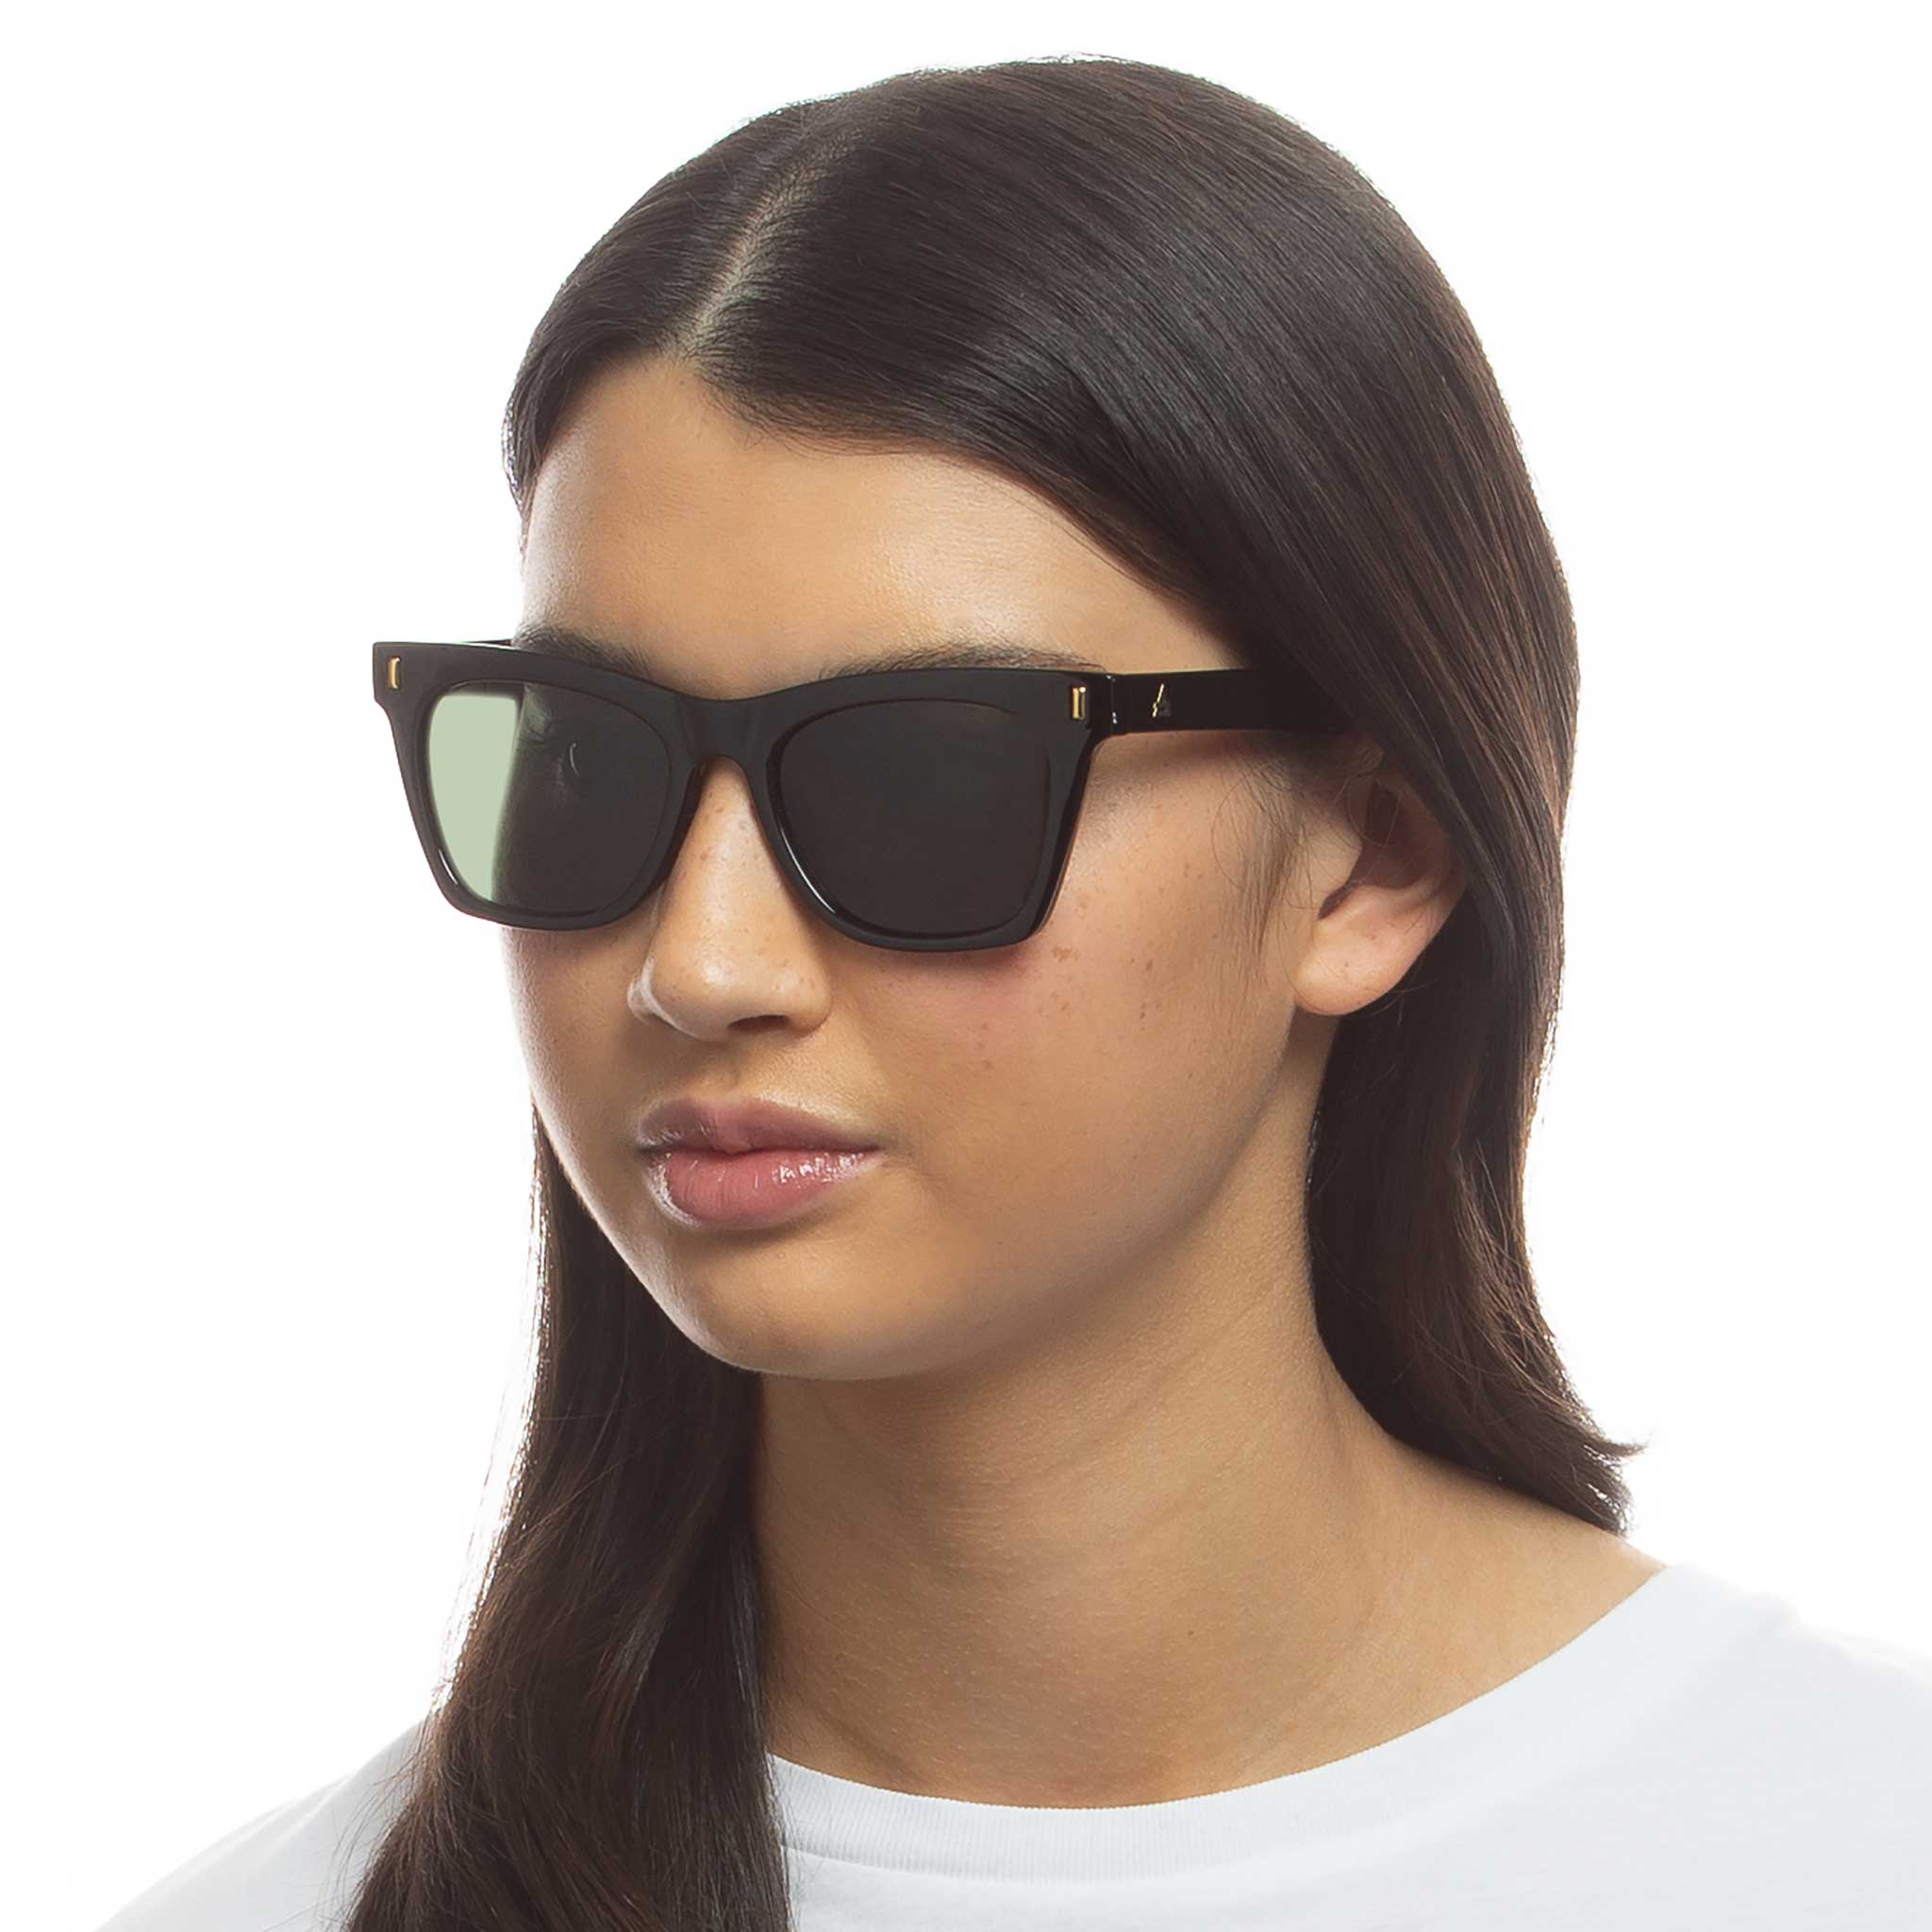 Buy Basik Eyewear Metal Dark Lens Spring Hinge Vintage Retro Wayfarer  Sunglasses (4331582044, Black) at Amazon.in